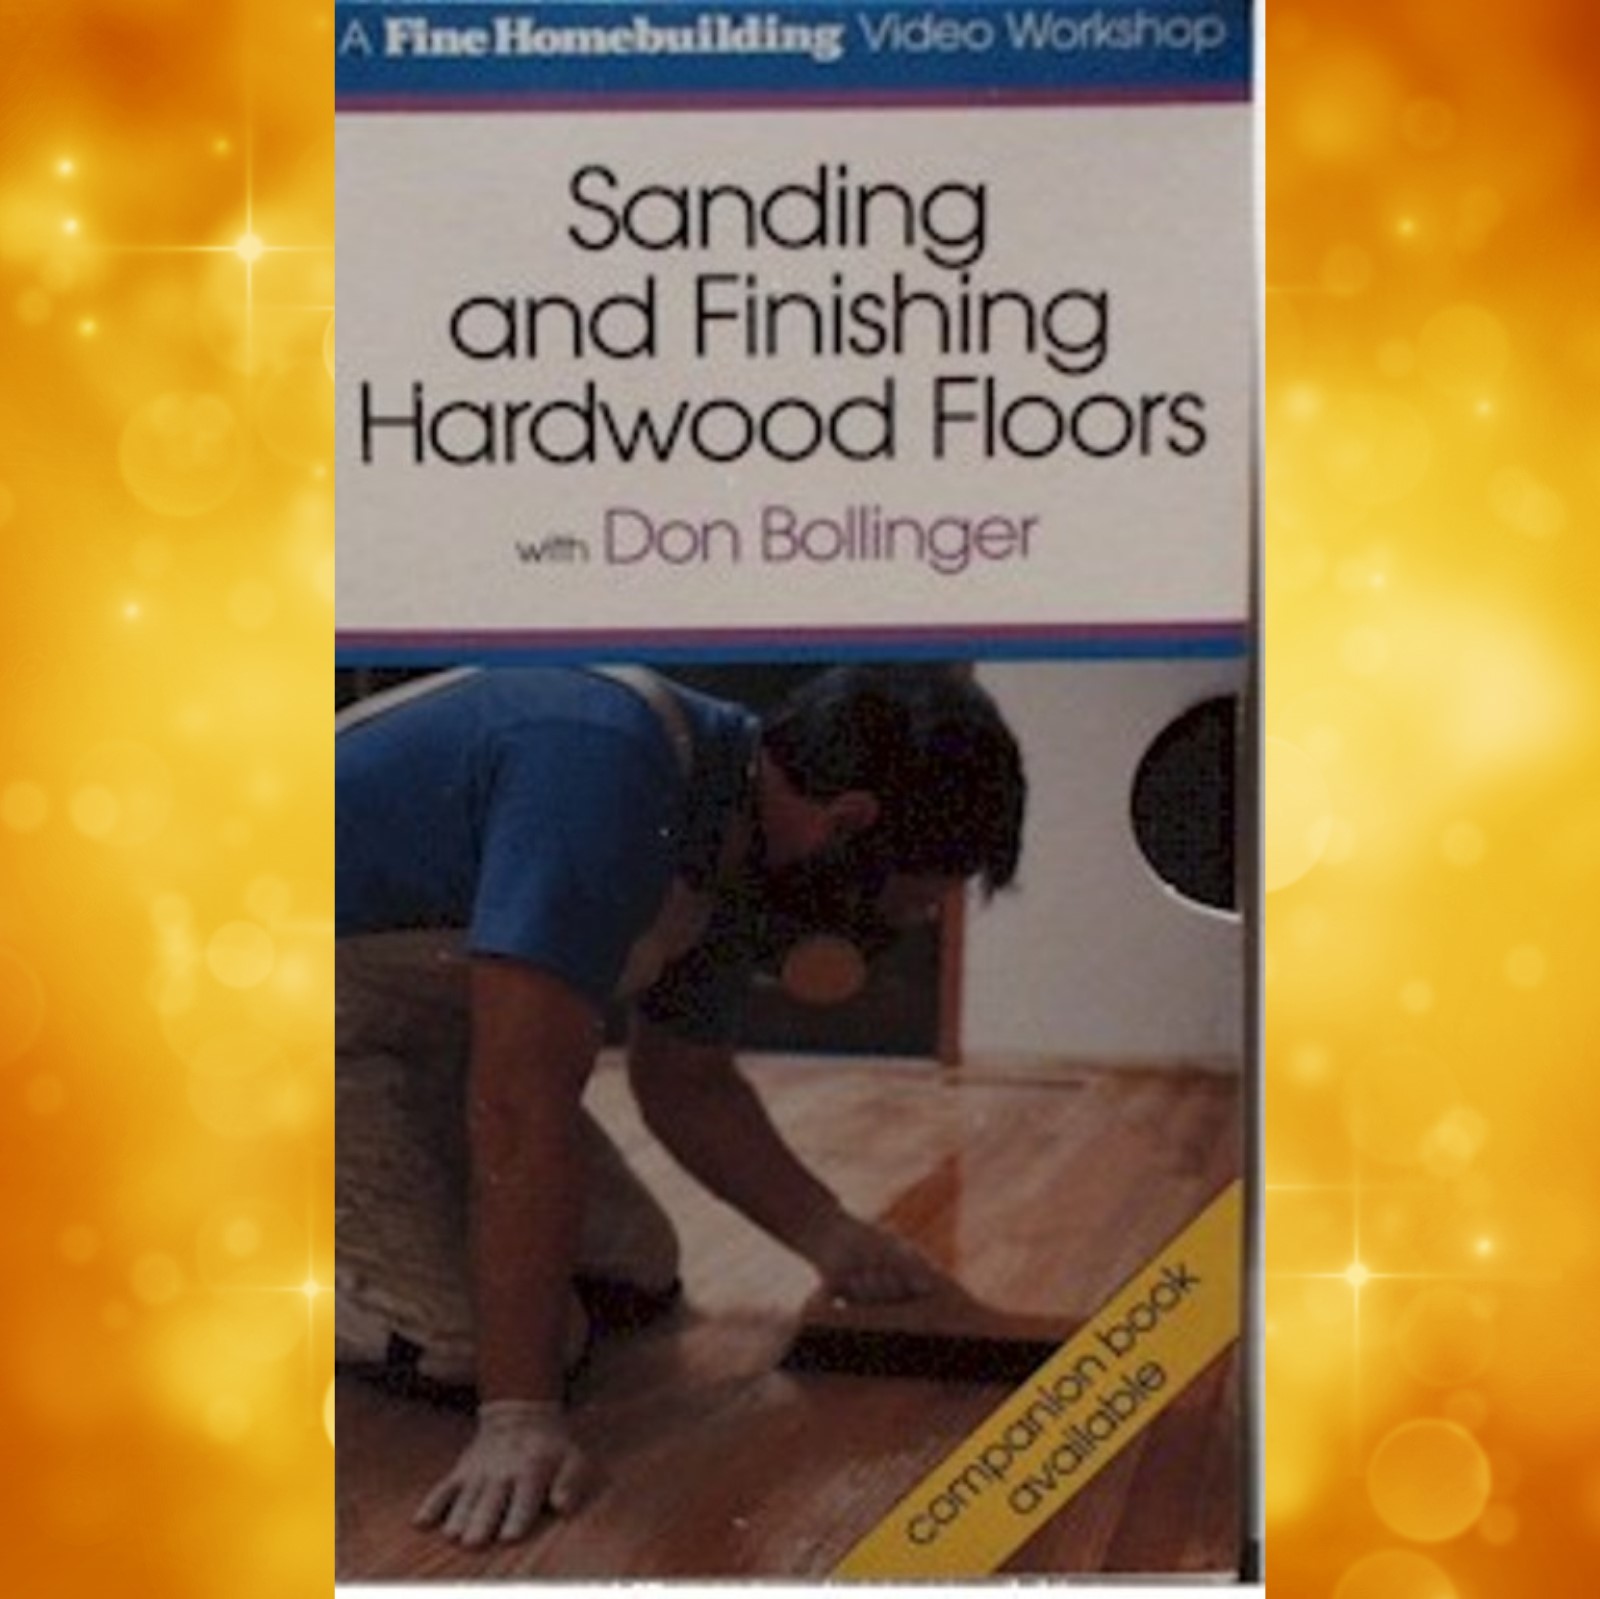 Sanding and Finishing Hardwood Floors/Don Bollinger  (VHS) 060059 